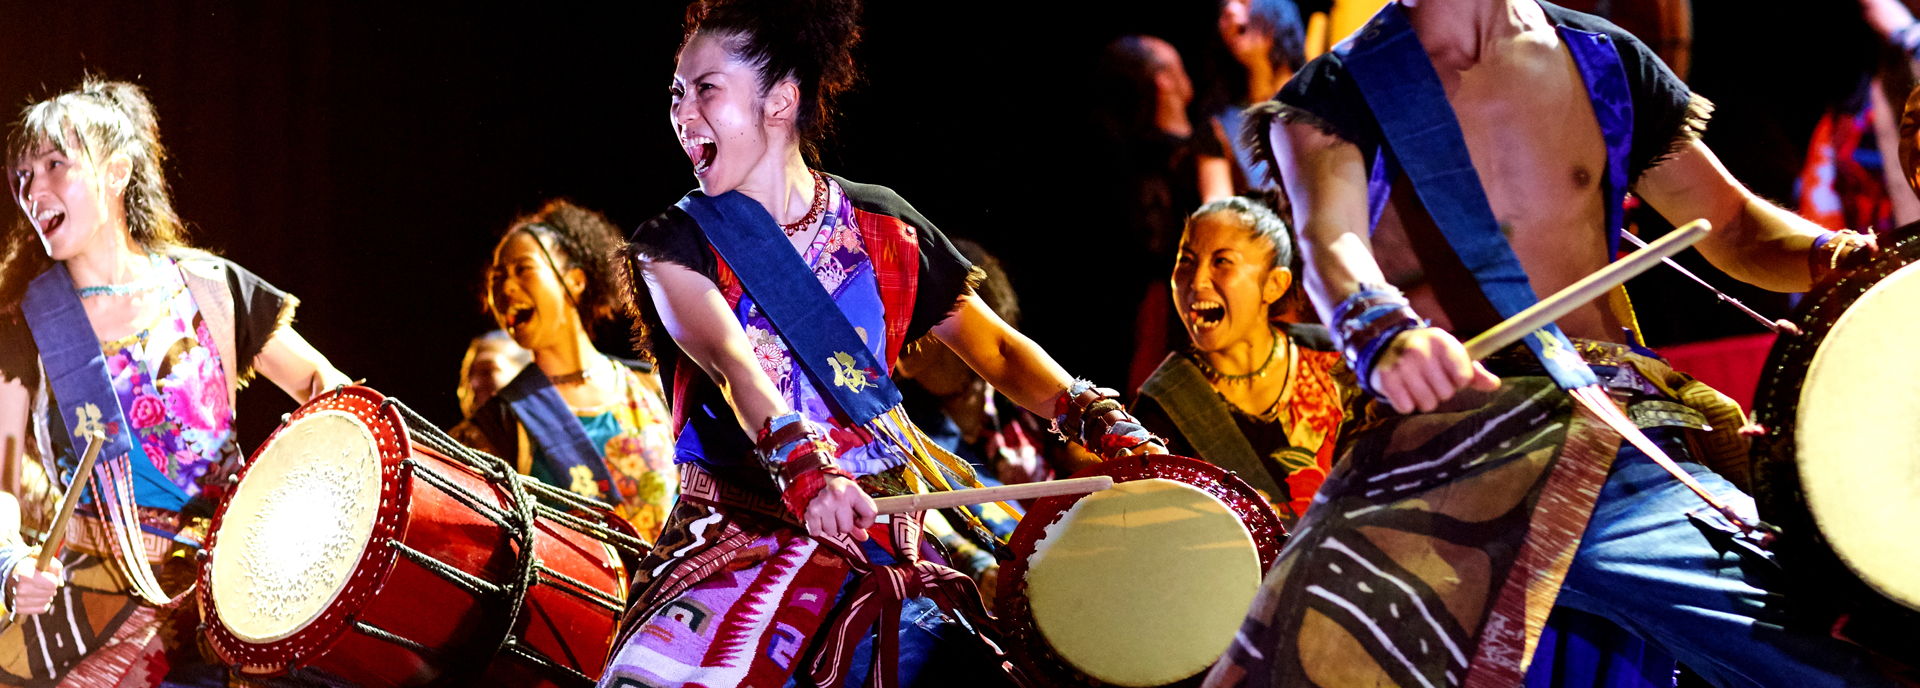 De Japanse drummers van Yamato zijn terug in Hoogeveen met een nieuwe show. Met de eeuwenoude taiko-drums zorgen ze voor een golf van energie, originaliteit en innovatie. 